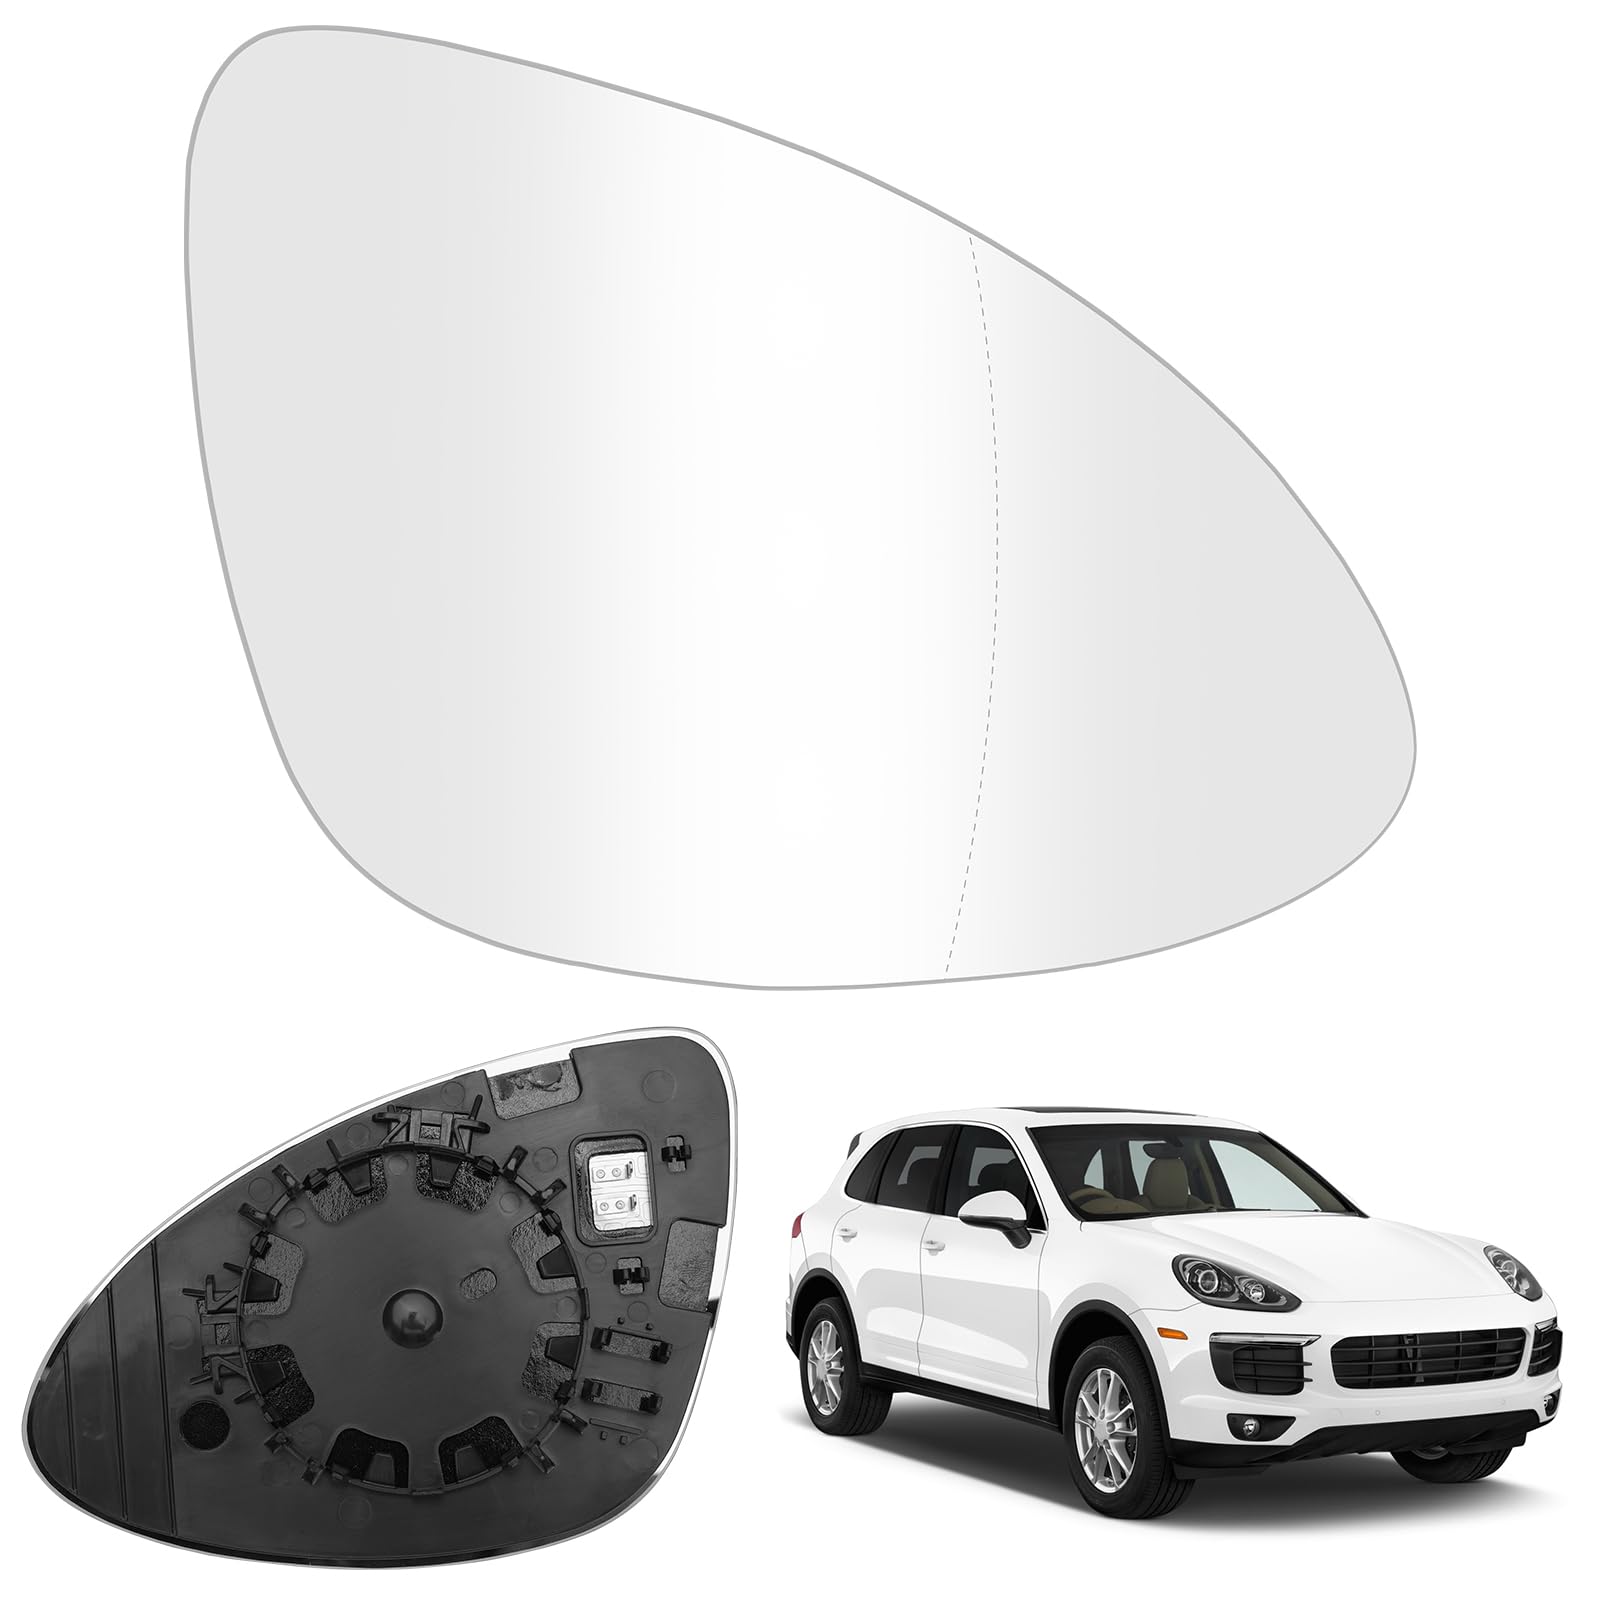 Spiegelglas Ersatz für Porsche Cayenne 2011-2018, Außenspiegel Glas Asphärisch Verstellbar Geeignet, Umkehrlinse Rückfahrglas Spiegel (Rechts) von JinsenTGG